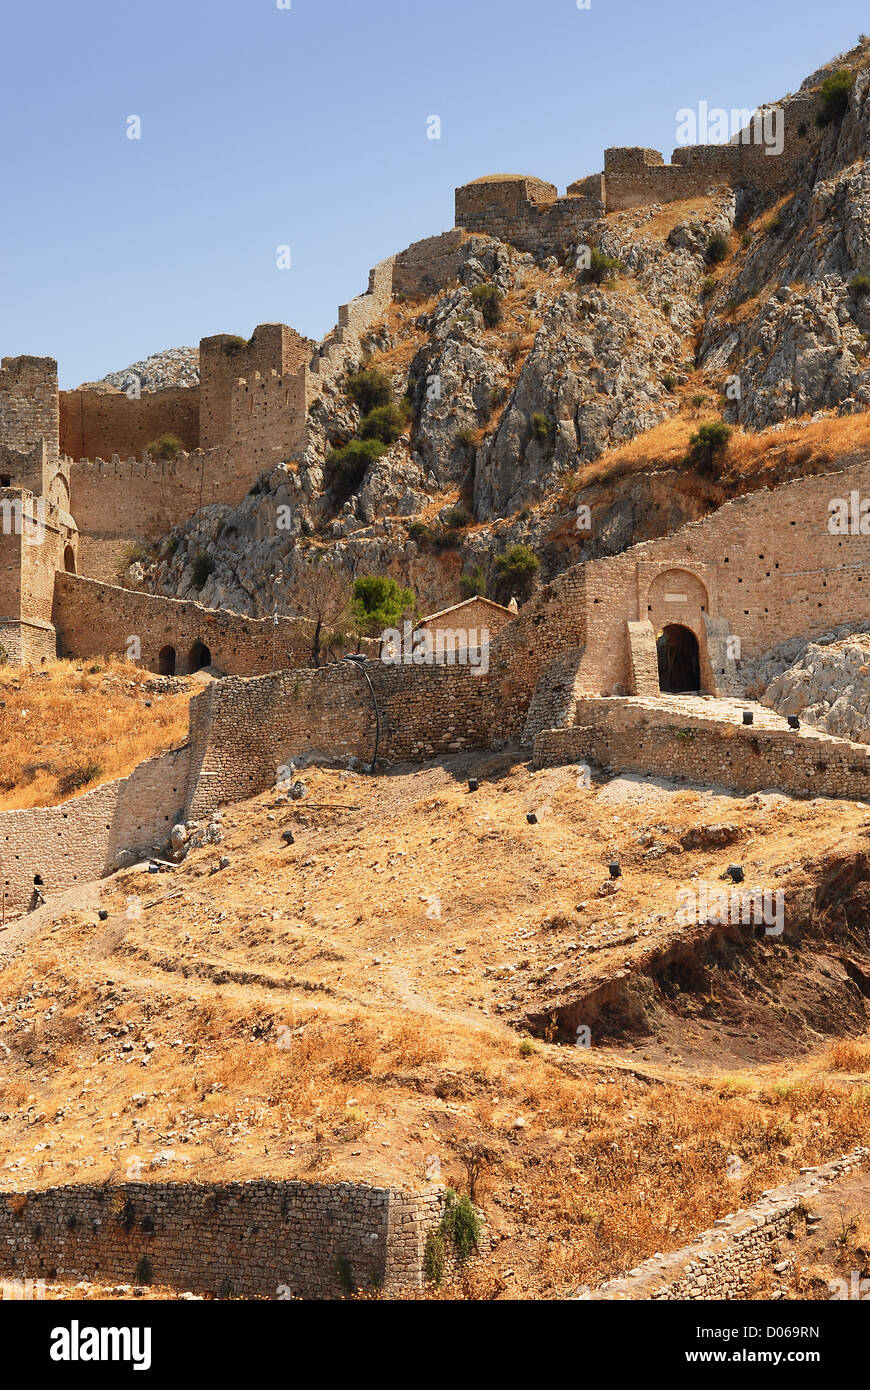 Alte Festung in Korinth, Griechenland - Archäologie-Hintergrund Stockfoto